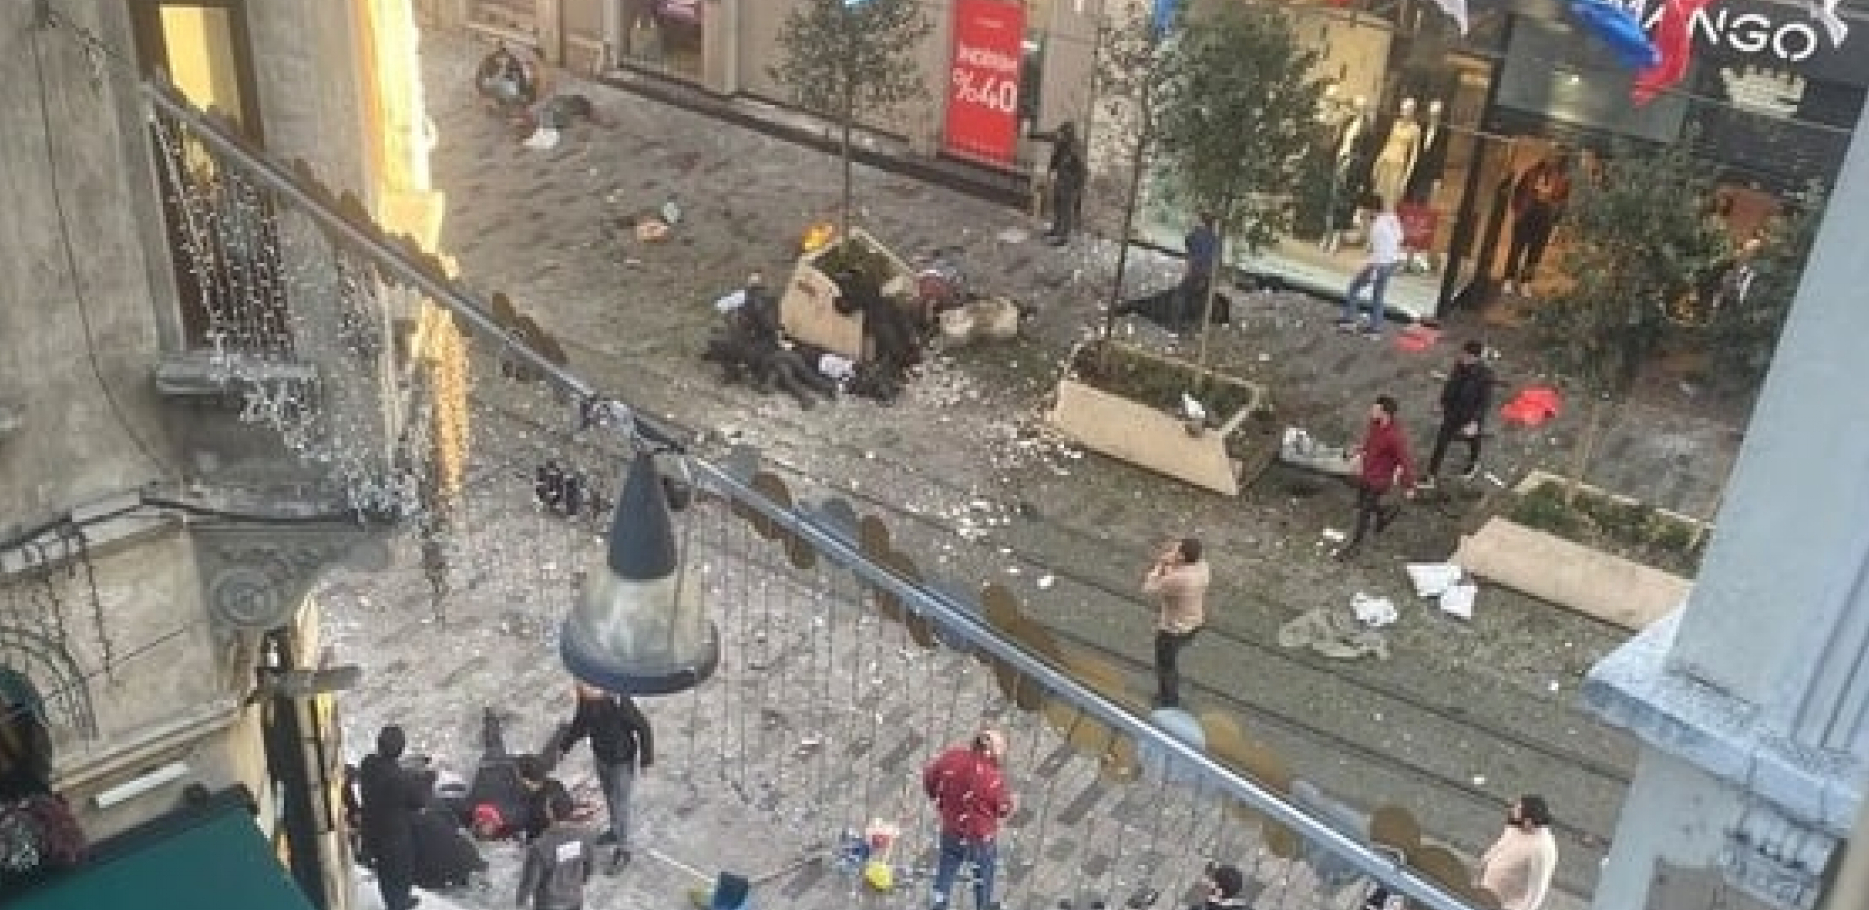 STRAVIČNE SCENE IZ ISTANBULA Ljudi nepomično leže, broje se mrtvi nakon eksplozije (VIDEO)